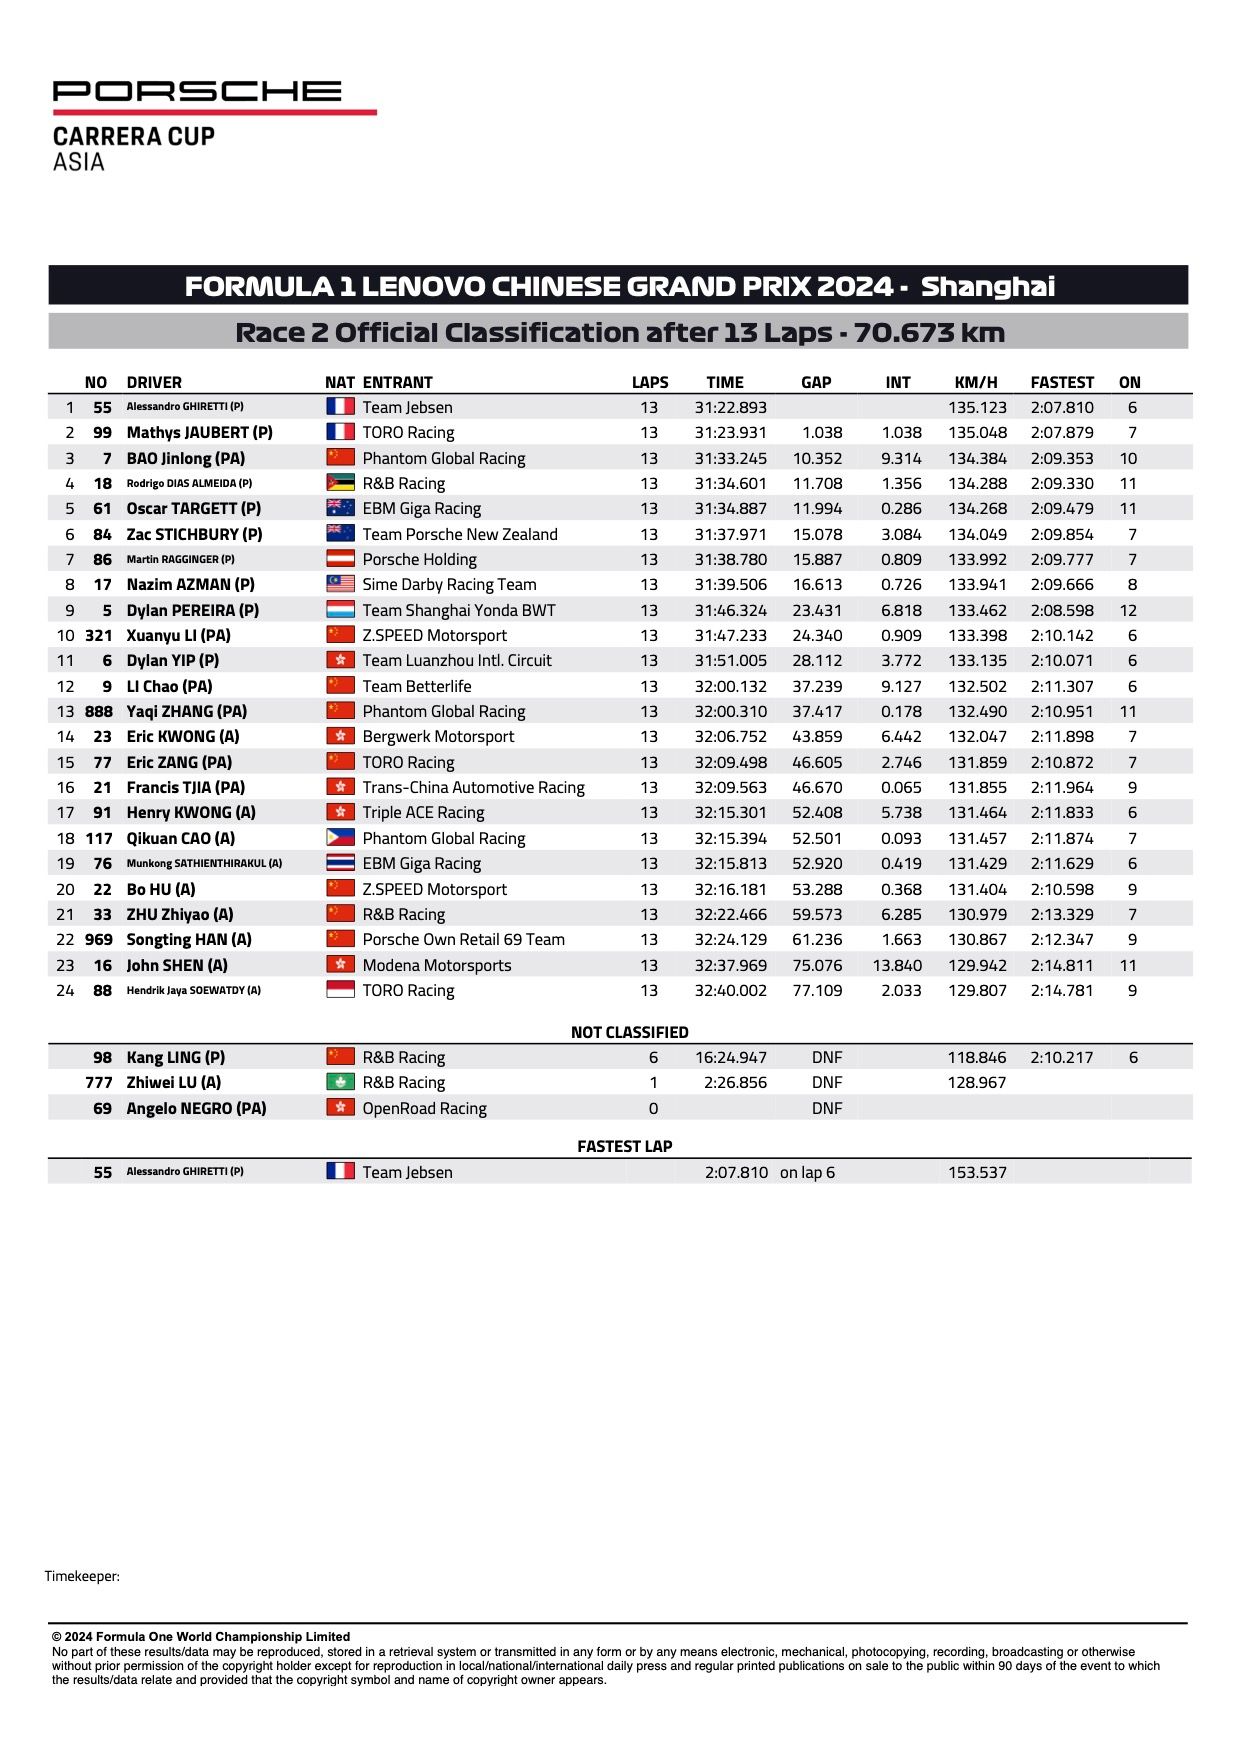 Risultati ufficiali della Porsche Carrera Cup Asia 2024 Shanghai Round 1 e 2 Gara 2